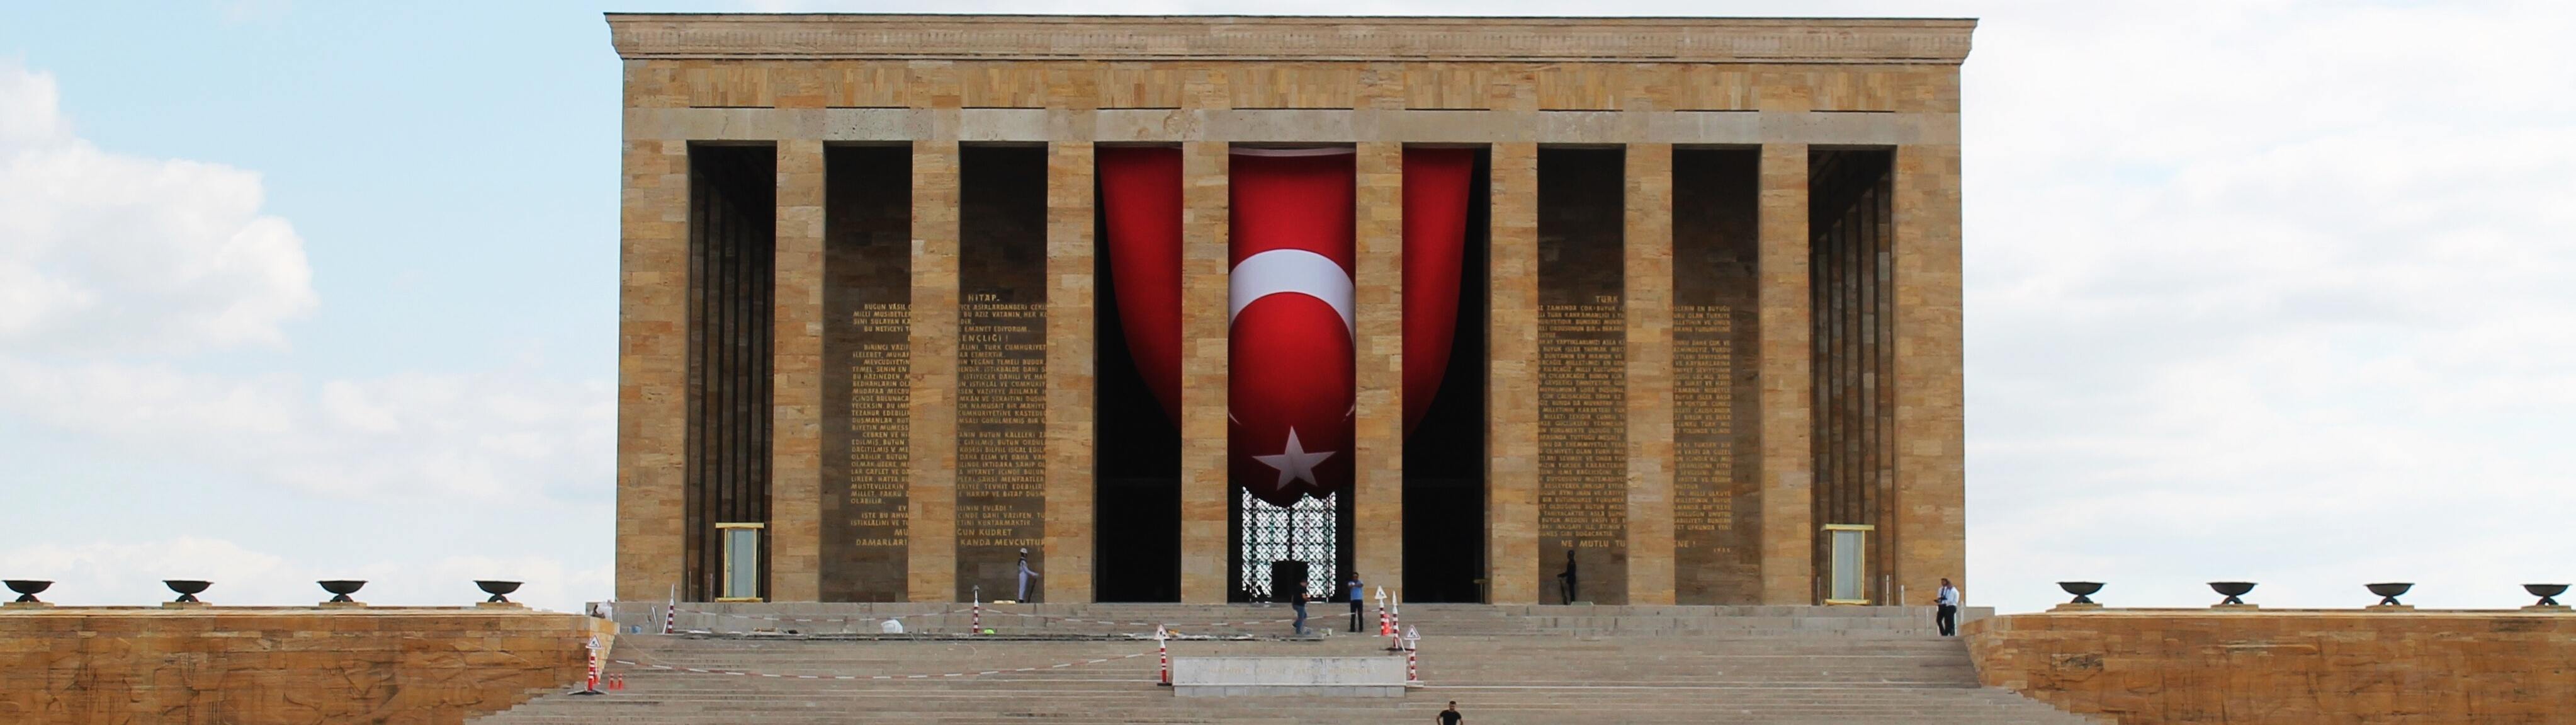 Atatürk Temalı Alınabilecek Hediyeler Nelerdir? 